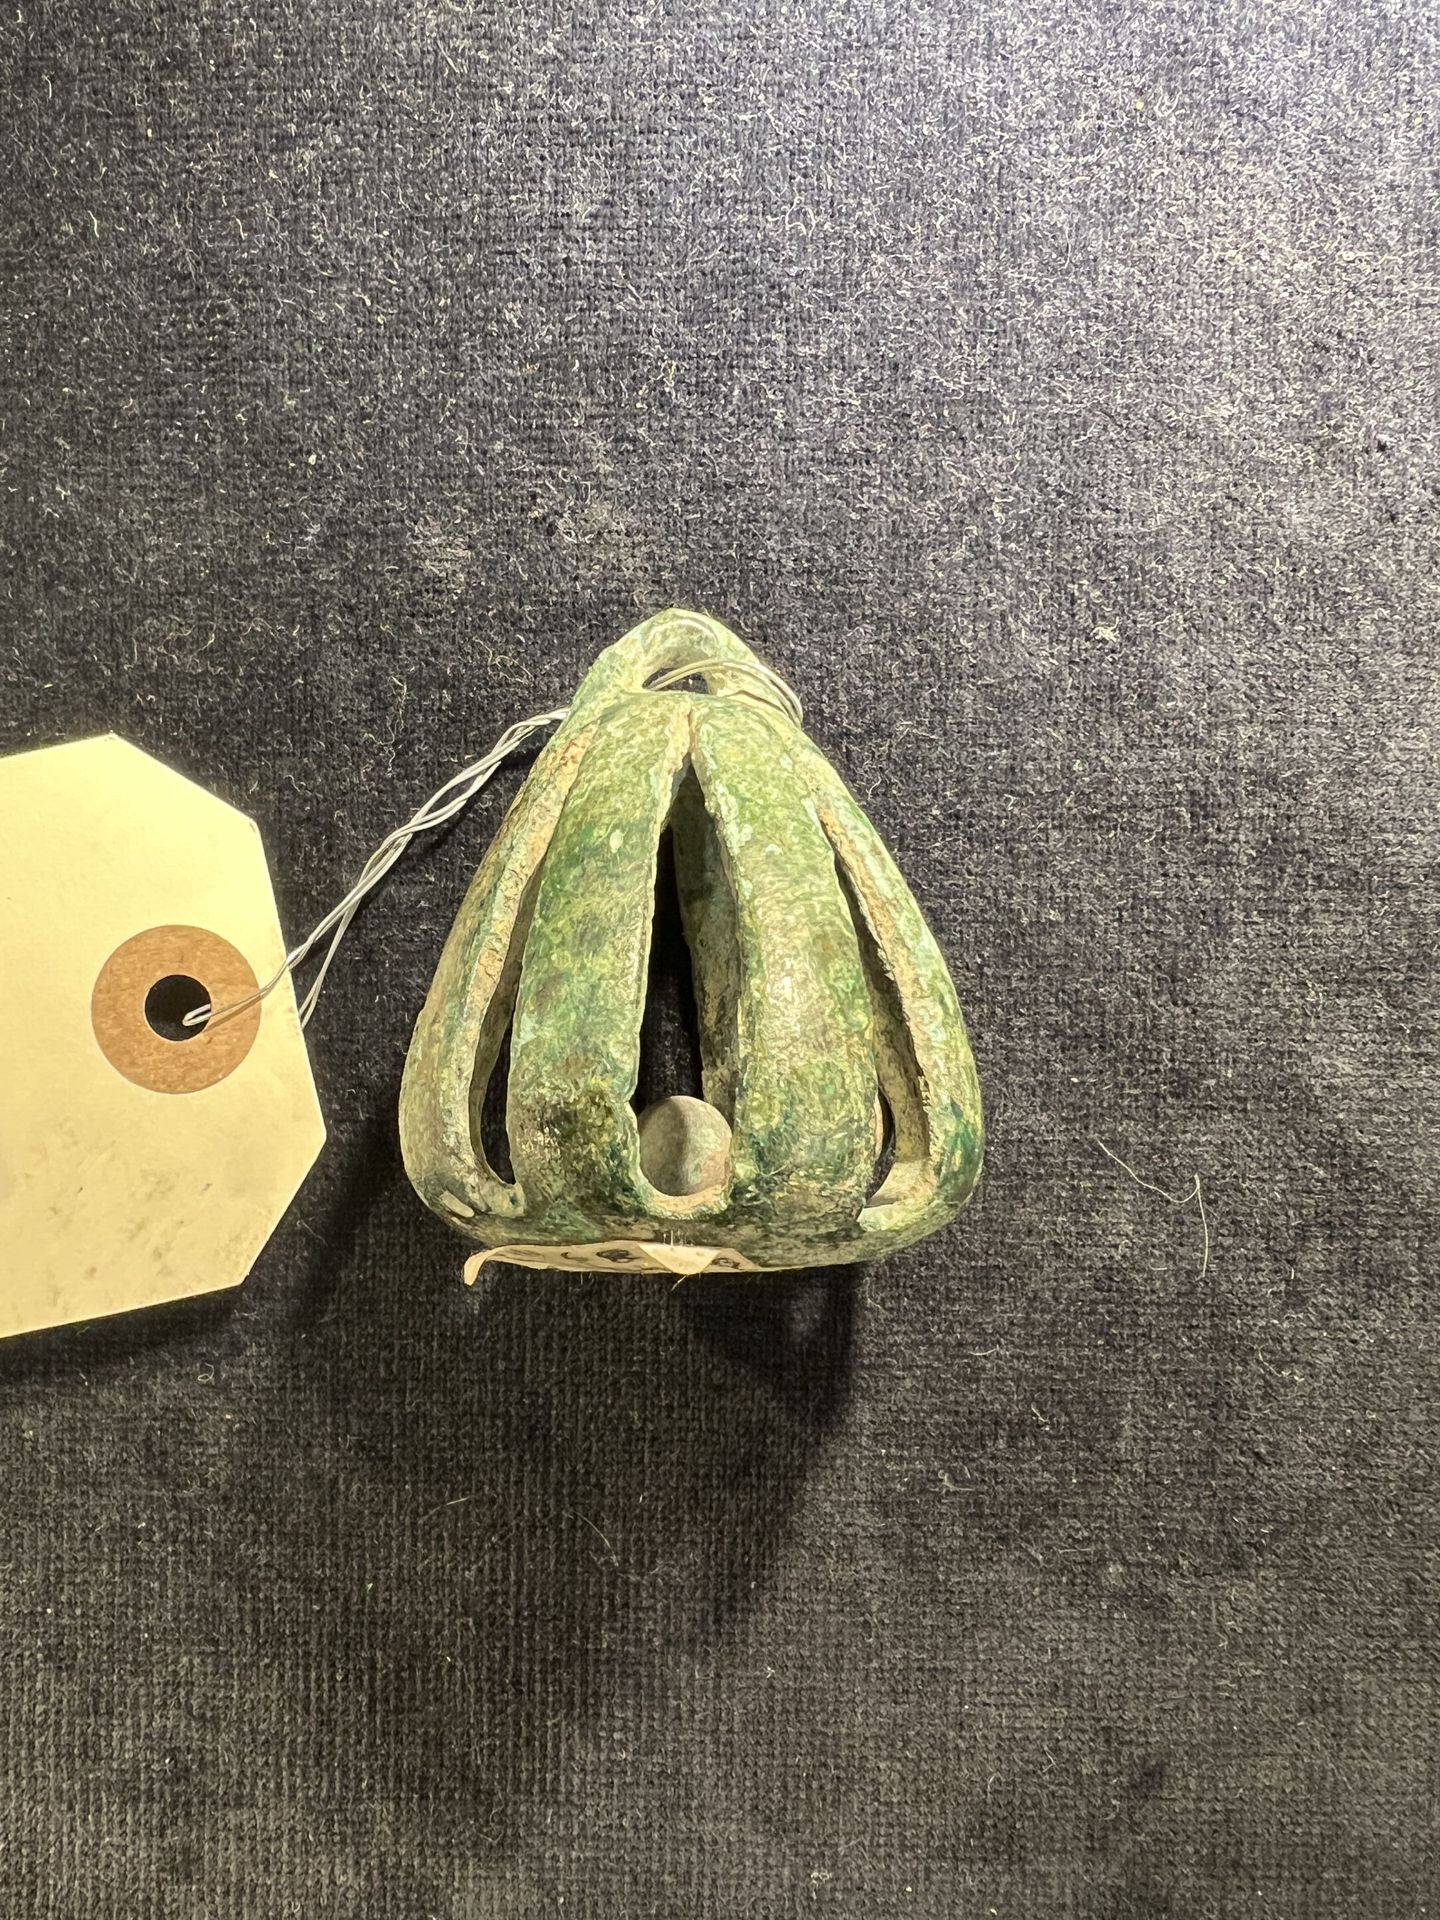 Null 卢里斯坦 - 约公元前1000-500年
青铜战车钟，圆锥形，镂空。 
高度：5,7厘米
参考资料：三个类似的铃铛在伦敦大英博物馆，编号1975,03&hellip;